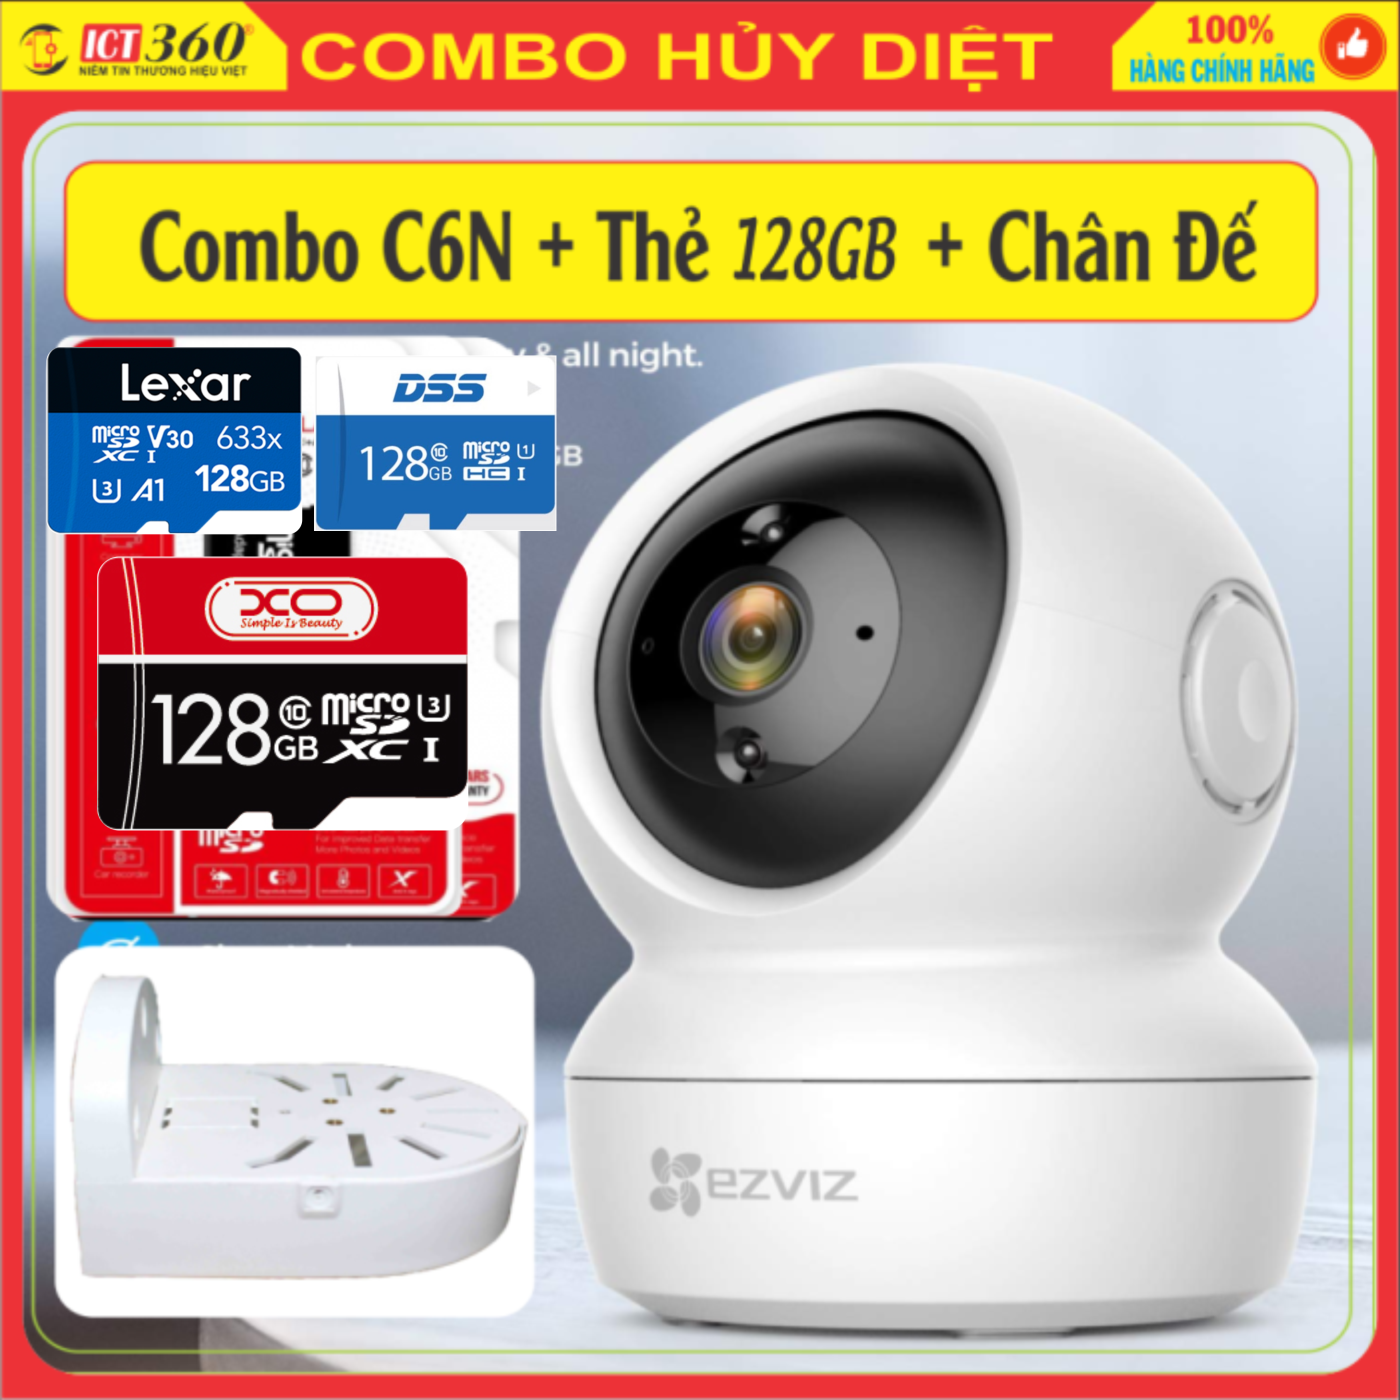 Combo Camera EZViz C6N Full HD 1080 + Thẻ 128GB + Chân Đế Chữ L ( Chính Hãng Bảo Hành 2 Năm)